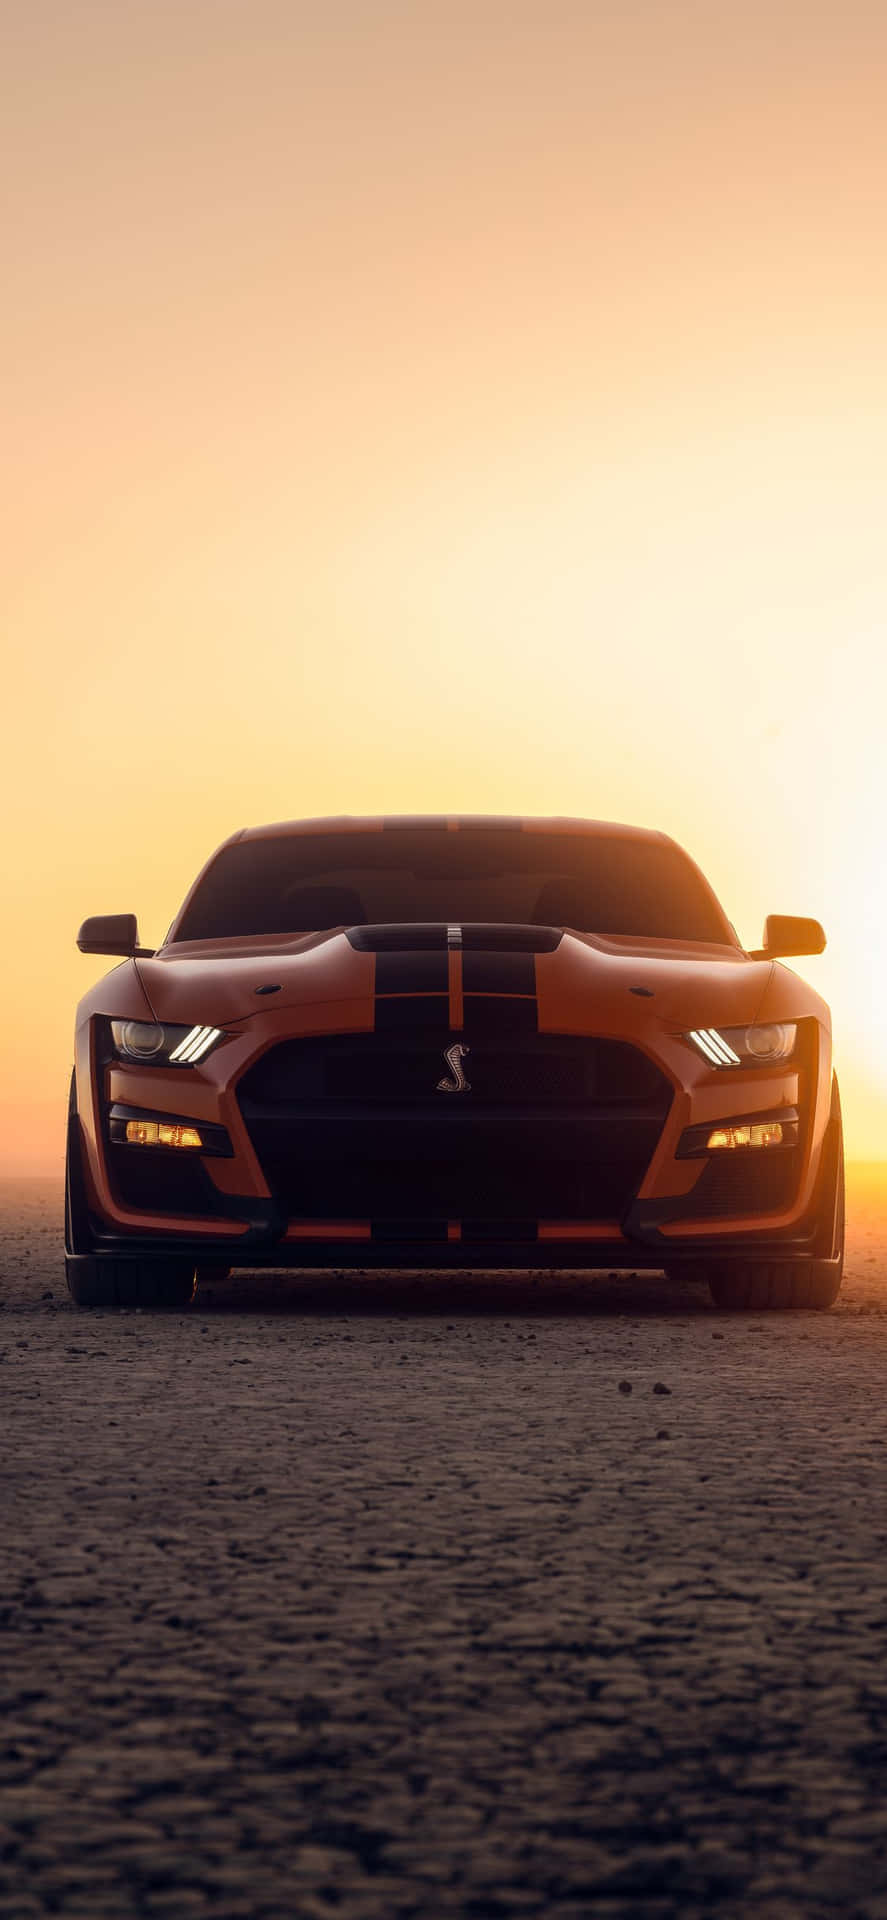 Einford Mustang Gt Sitzt In Der Wüste Bei Sonnenuntergang. Wallpaper